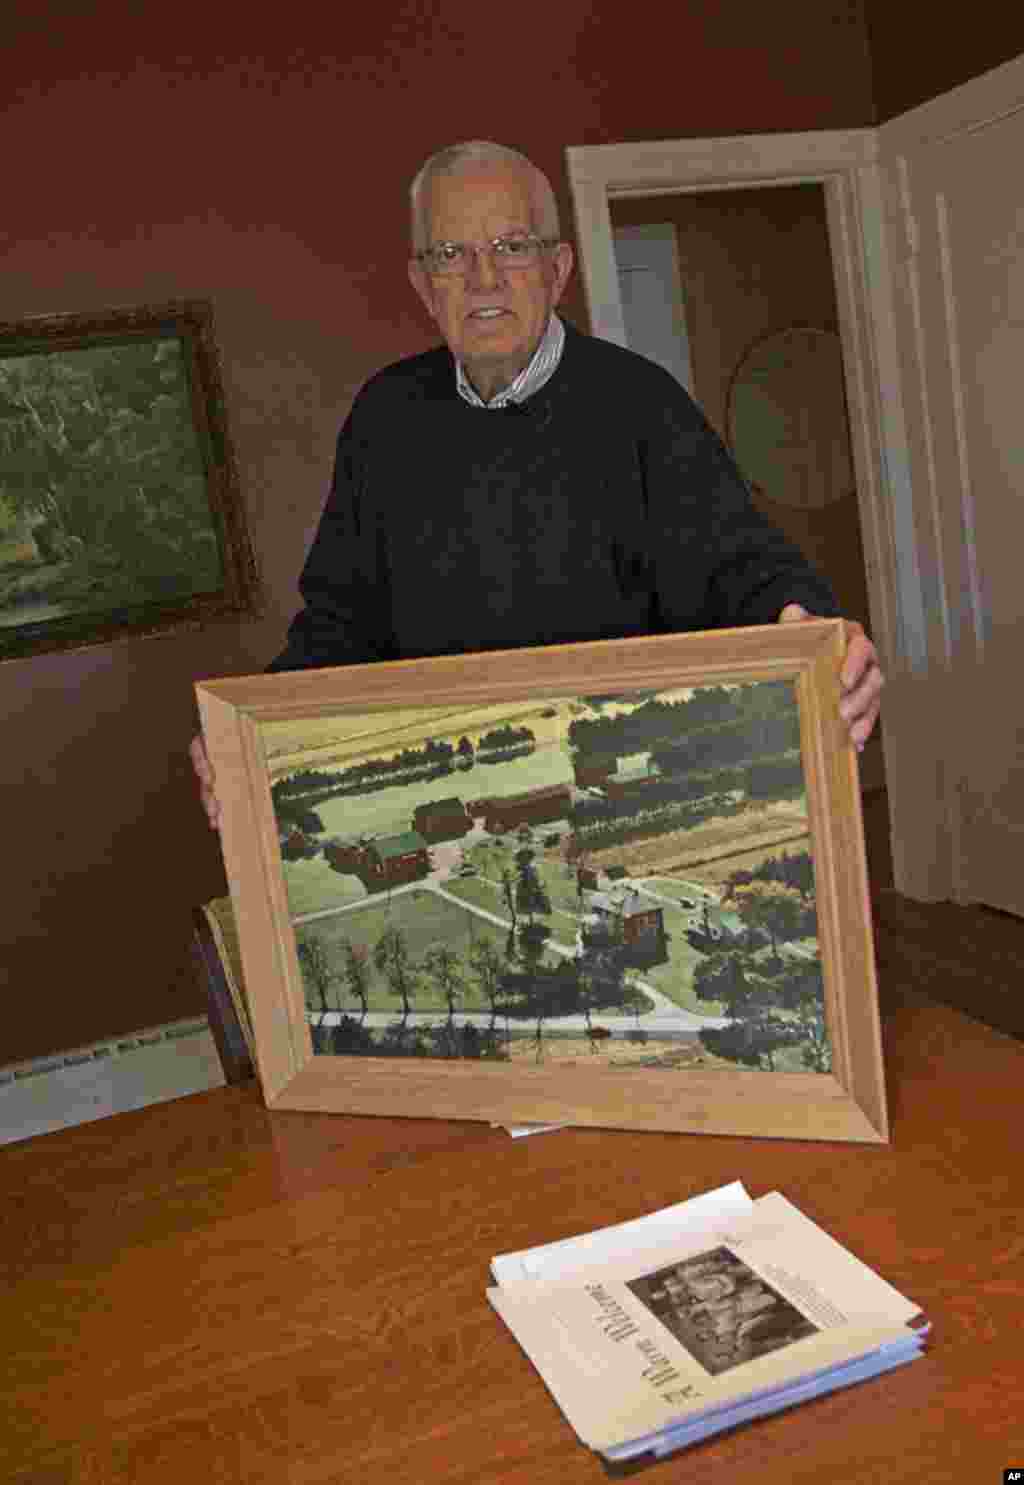 湯姆‧胡普斯今年72歲，他陪習近平等人參觀了自家的蔬菜農場，給客人講述利用溫室育苗的技術。胡普斯已經退休，他用手扶著的那張鑲在畫框中的照片就是1980年代的農場。